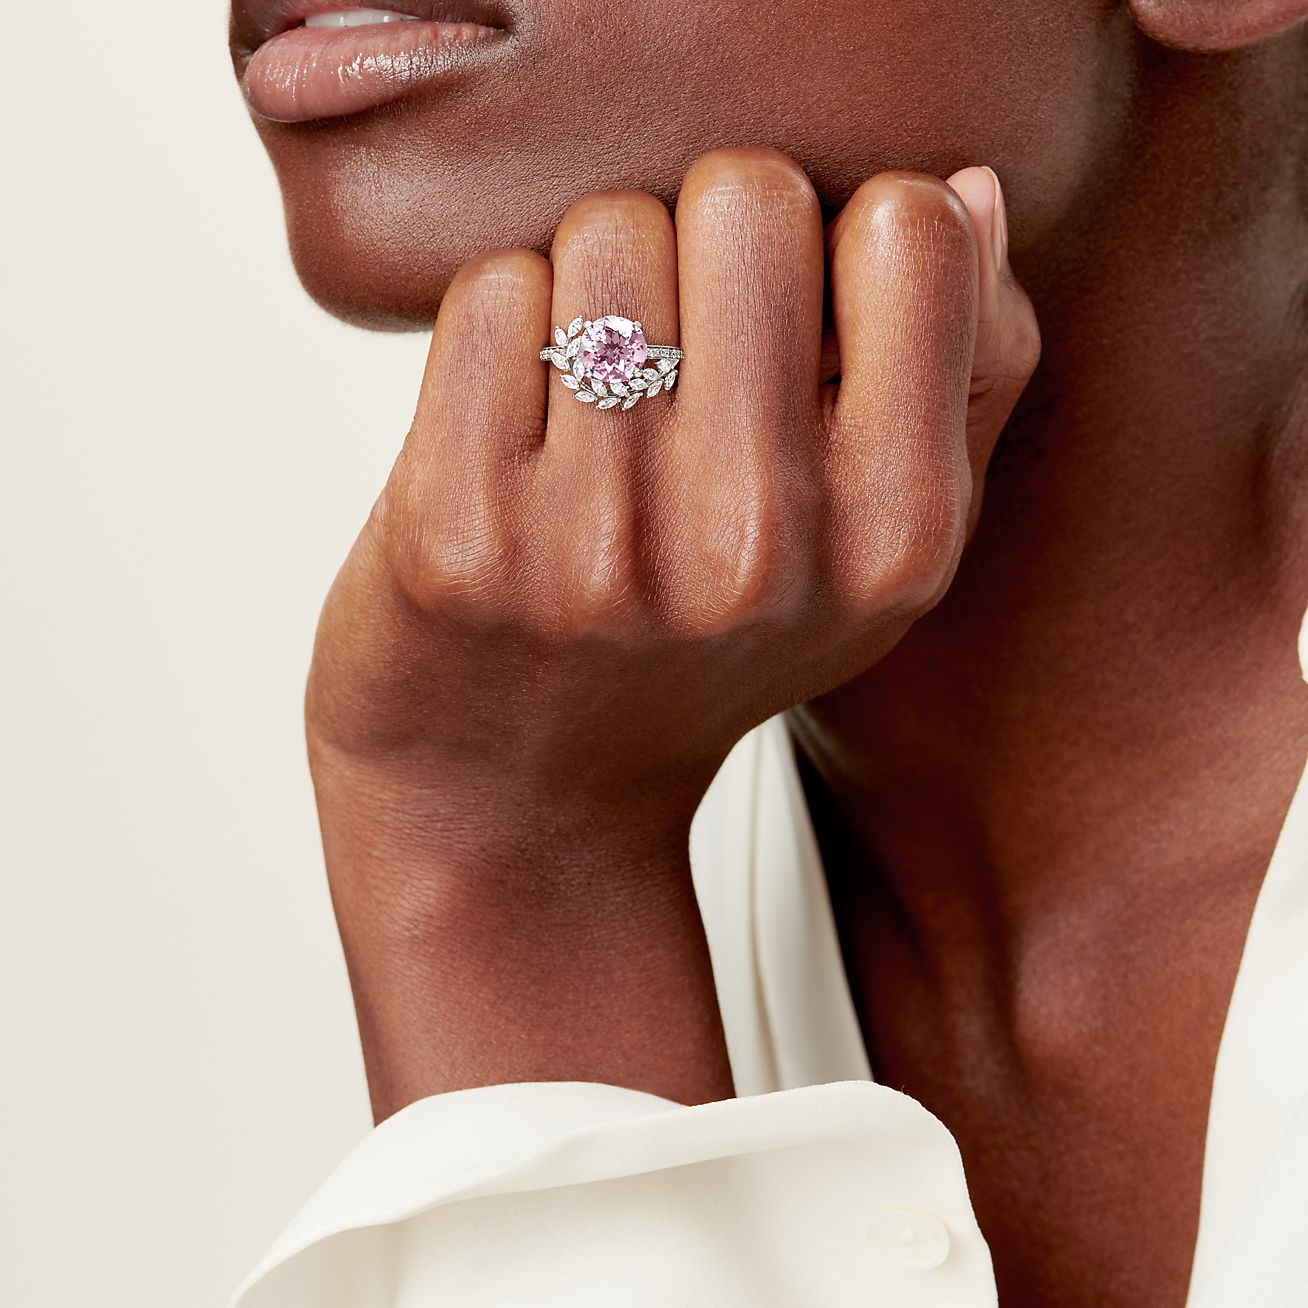 Tiffany Victoria™ Vine Ring in Platinum with a Morganite and Diamonds |  Tiffany u0026 Co.